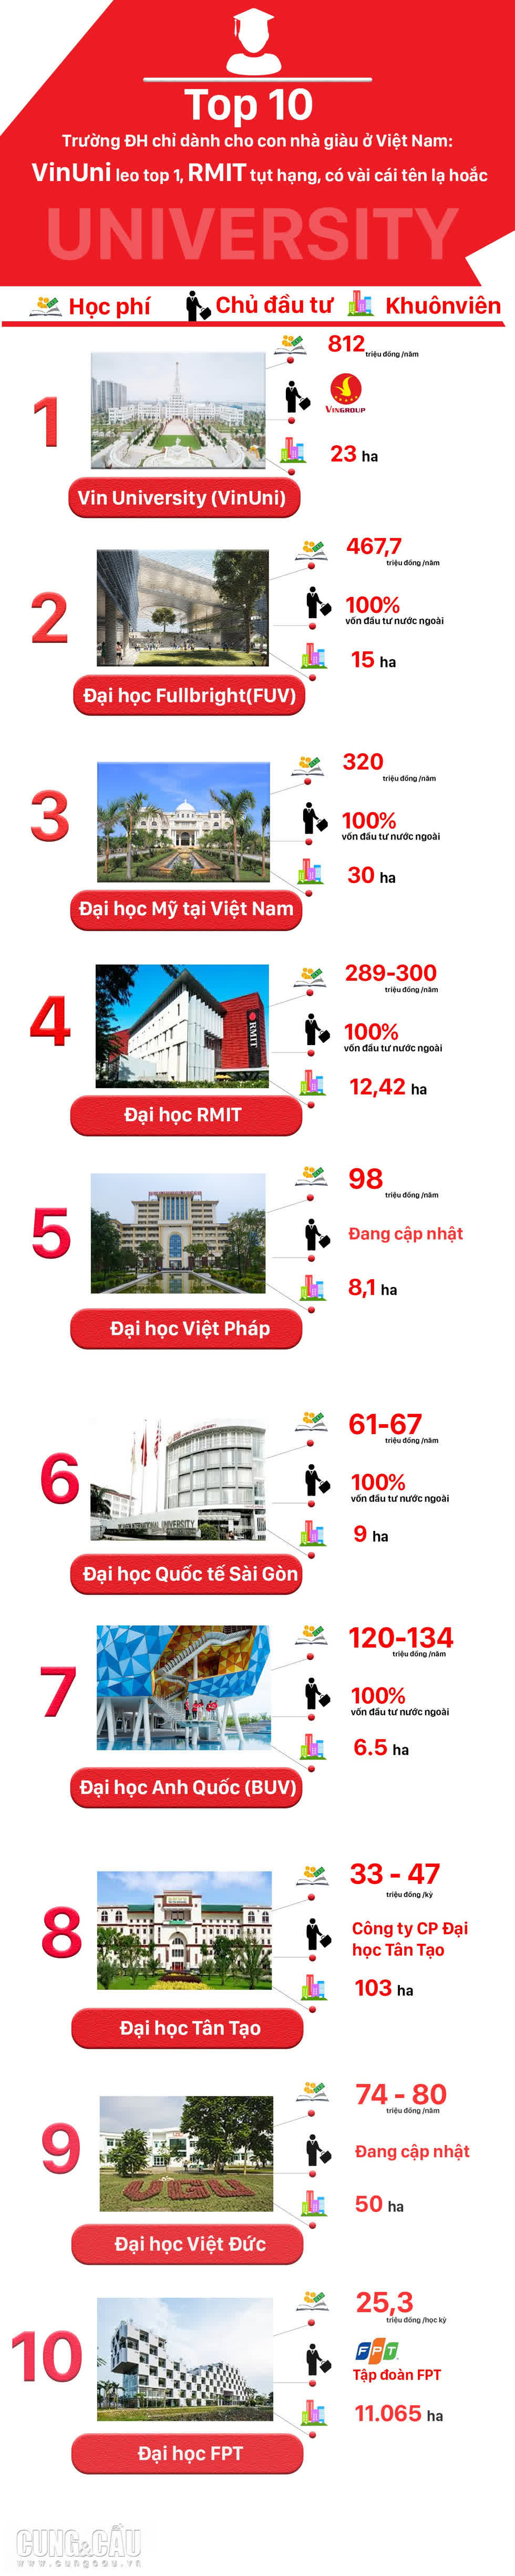 Top 10 trường đại học dành cho con nhà giàu ở Việt Nam: VinUni dẫn đầu